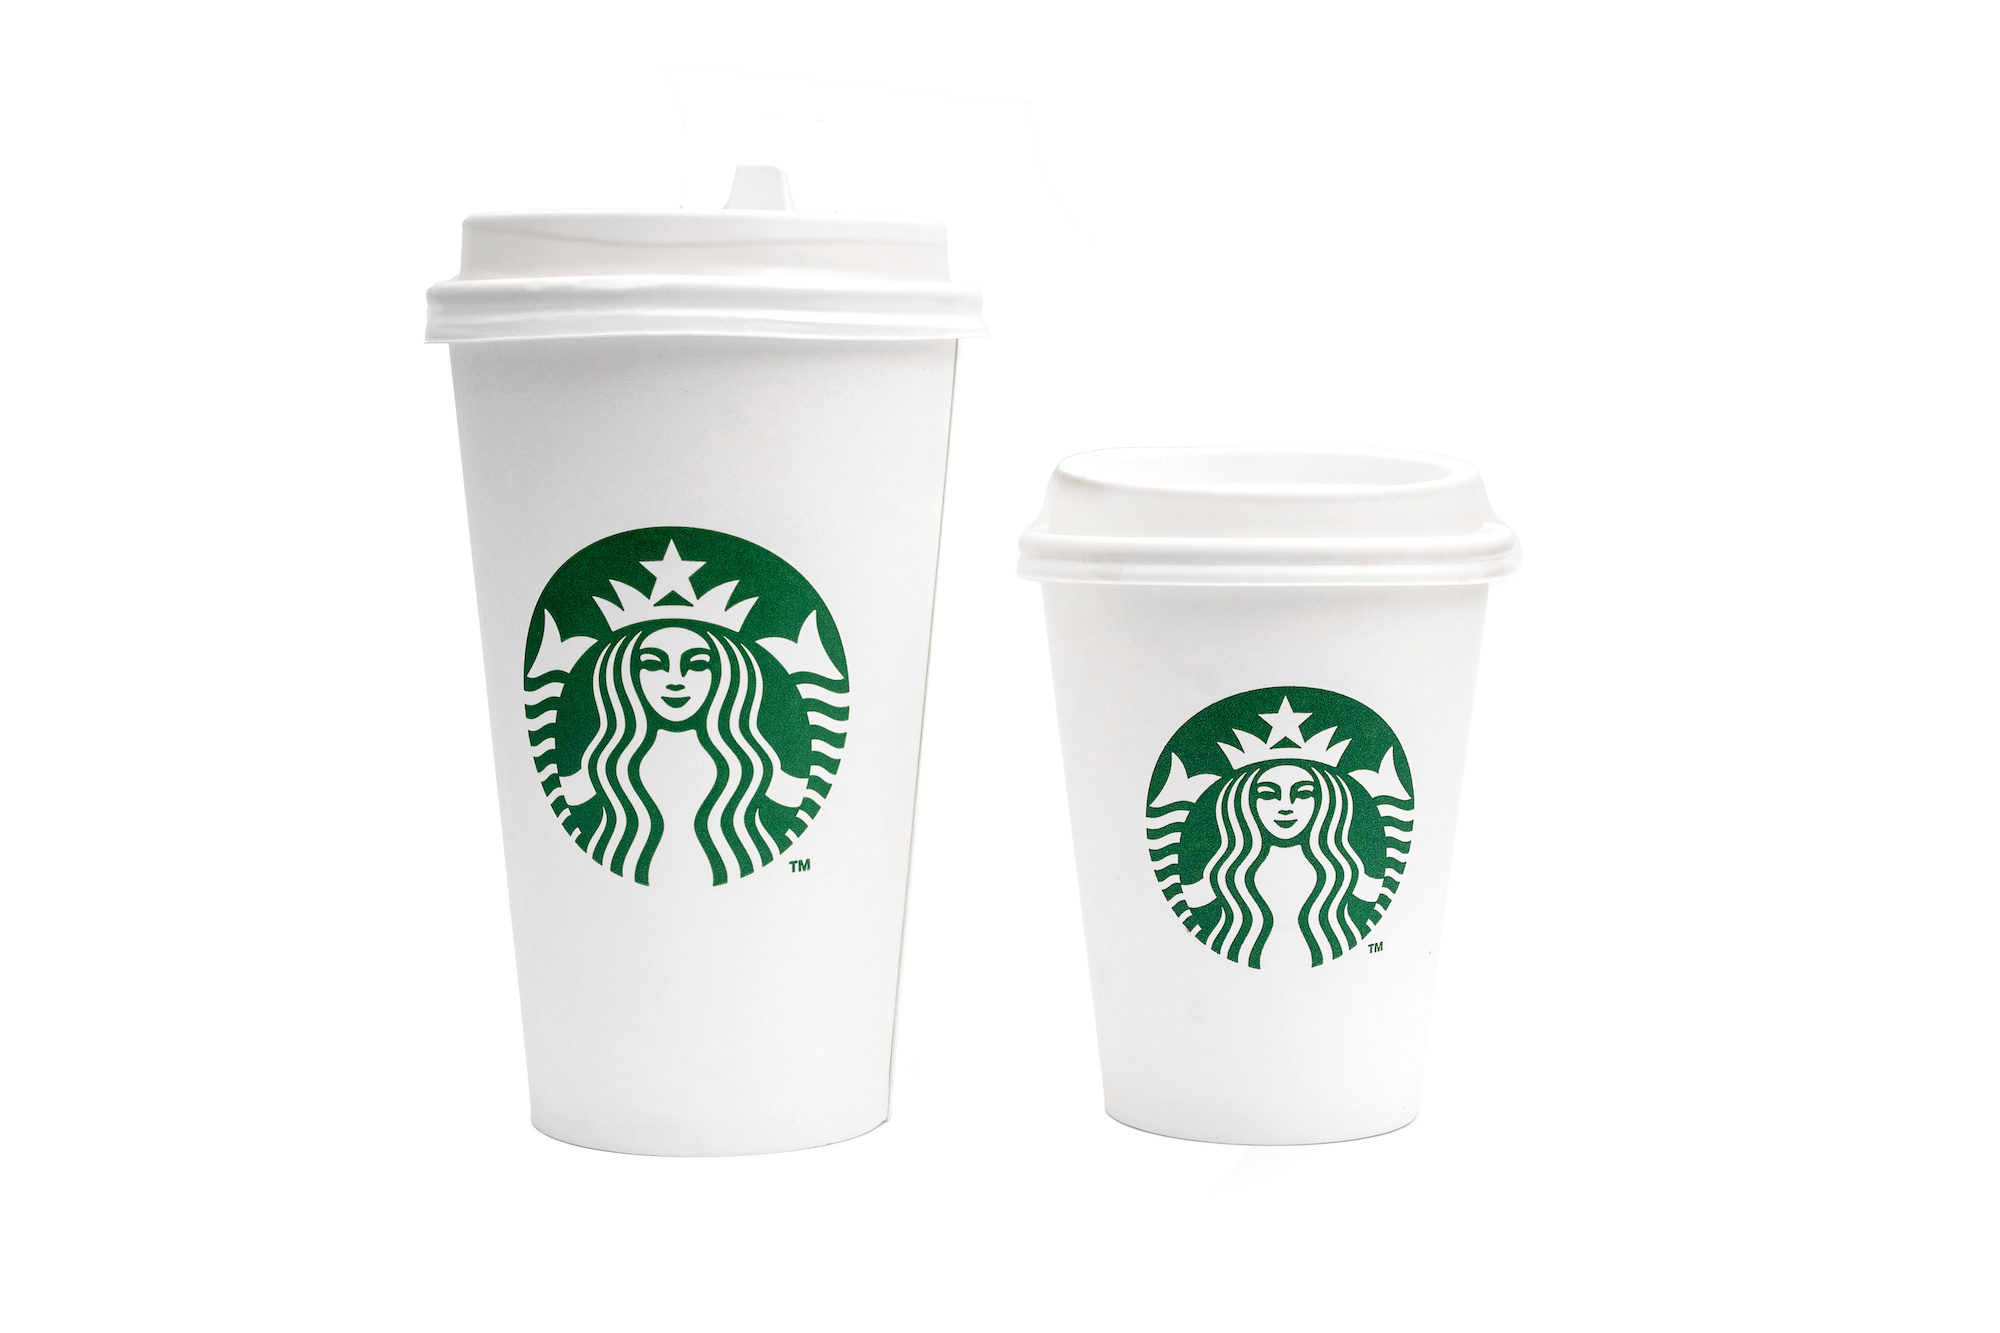 Starbucks Short: The Starbucks Short Cup Size